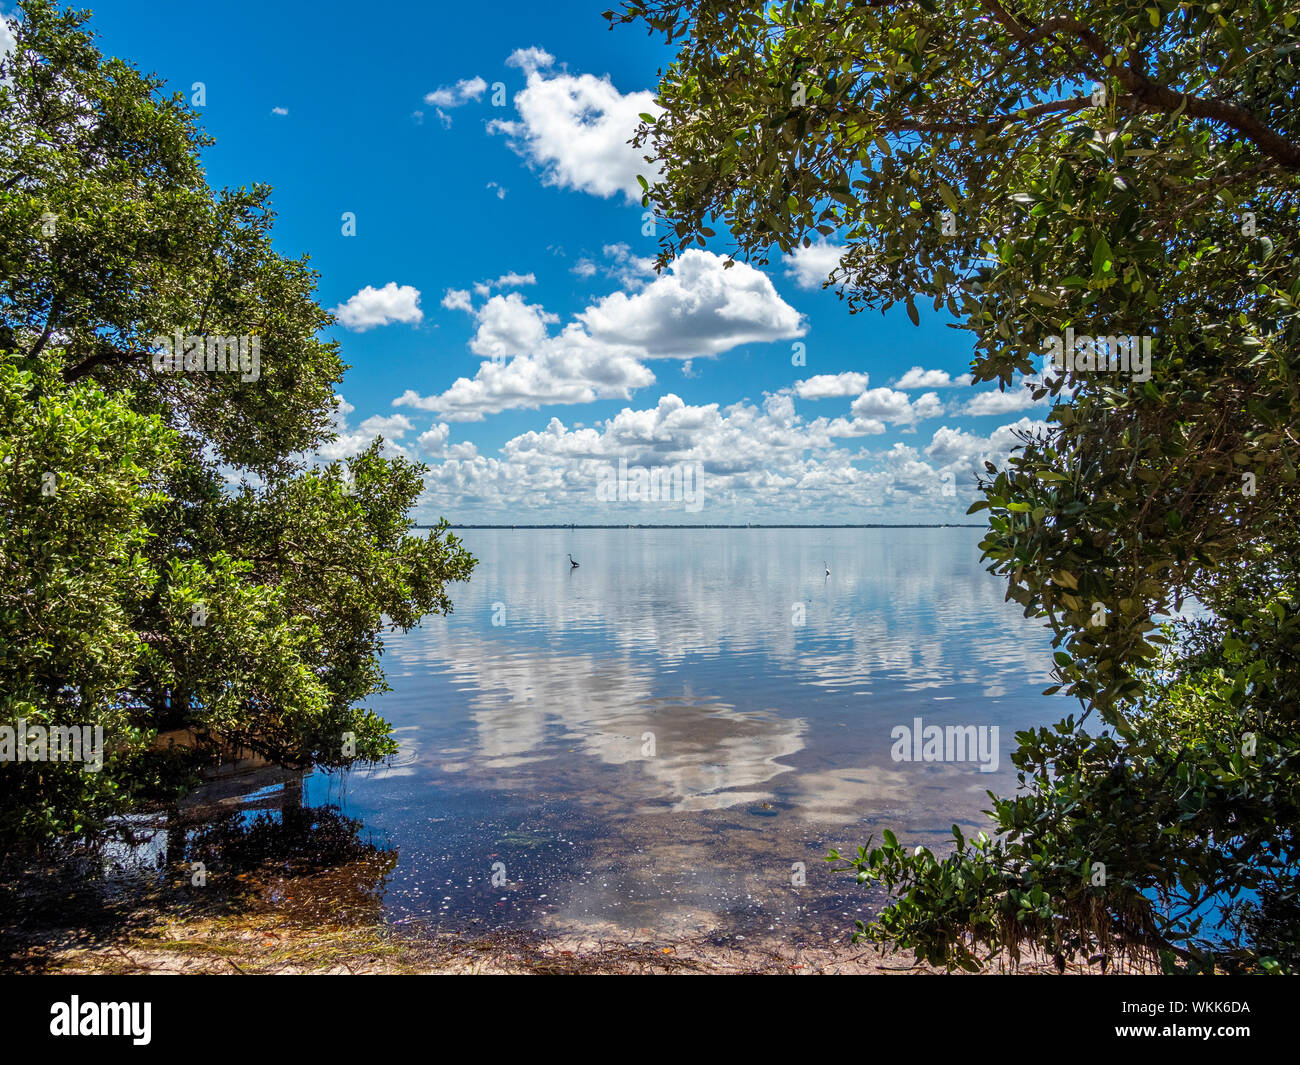 Les nuages blancs dans le ciel bleu se reflétant dans la baie de Sarasota prises de Joan M Durante Park sur Longboat Key dans le sud-ouest de la Floride Banque D'Images